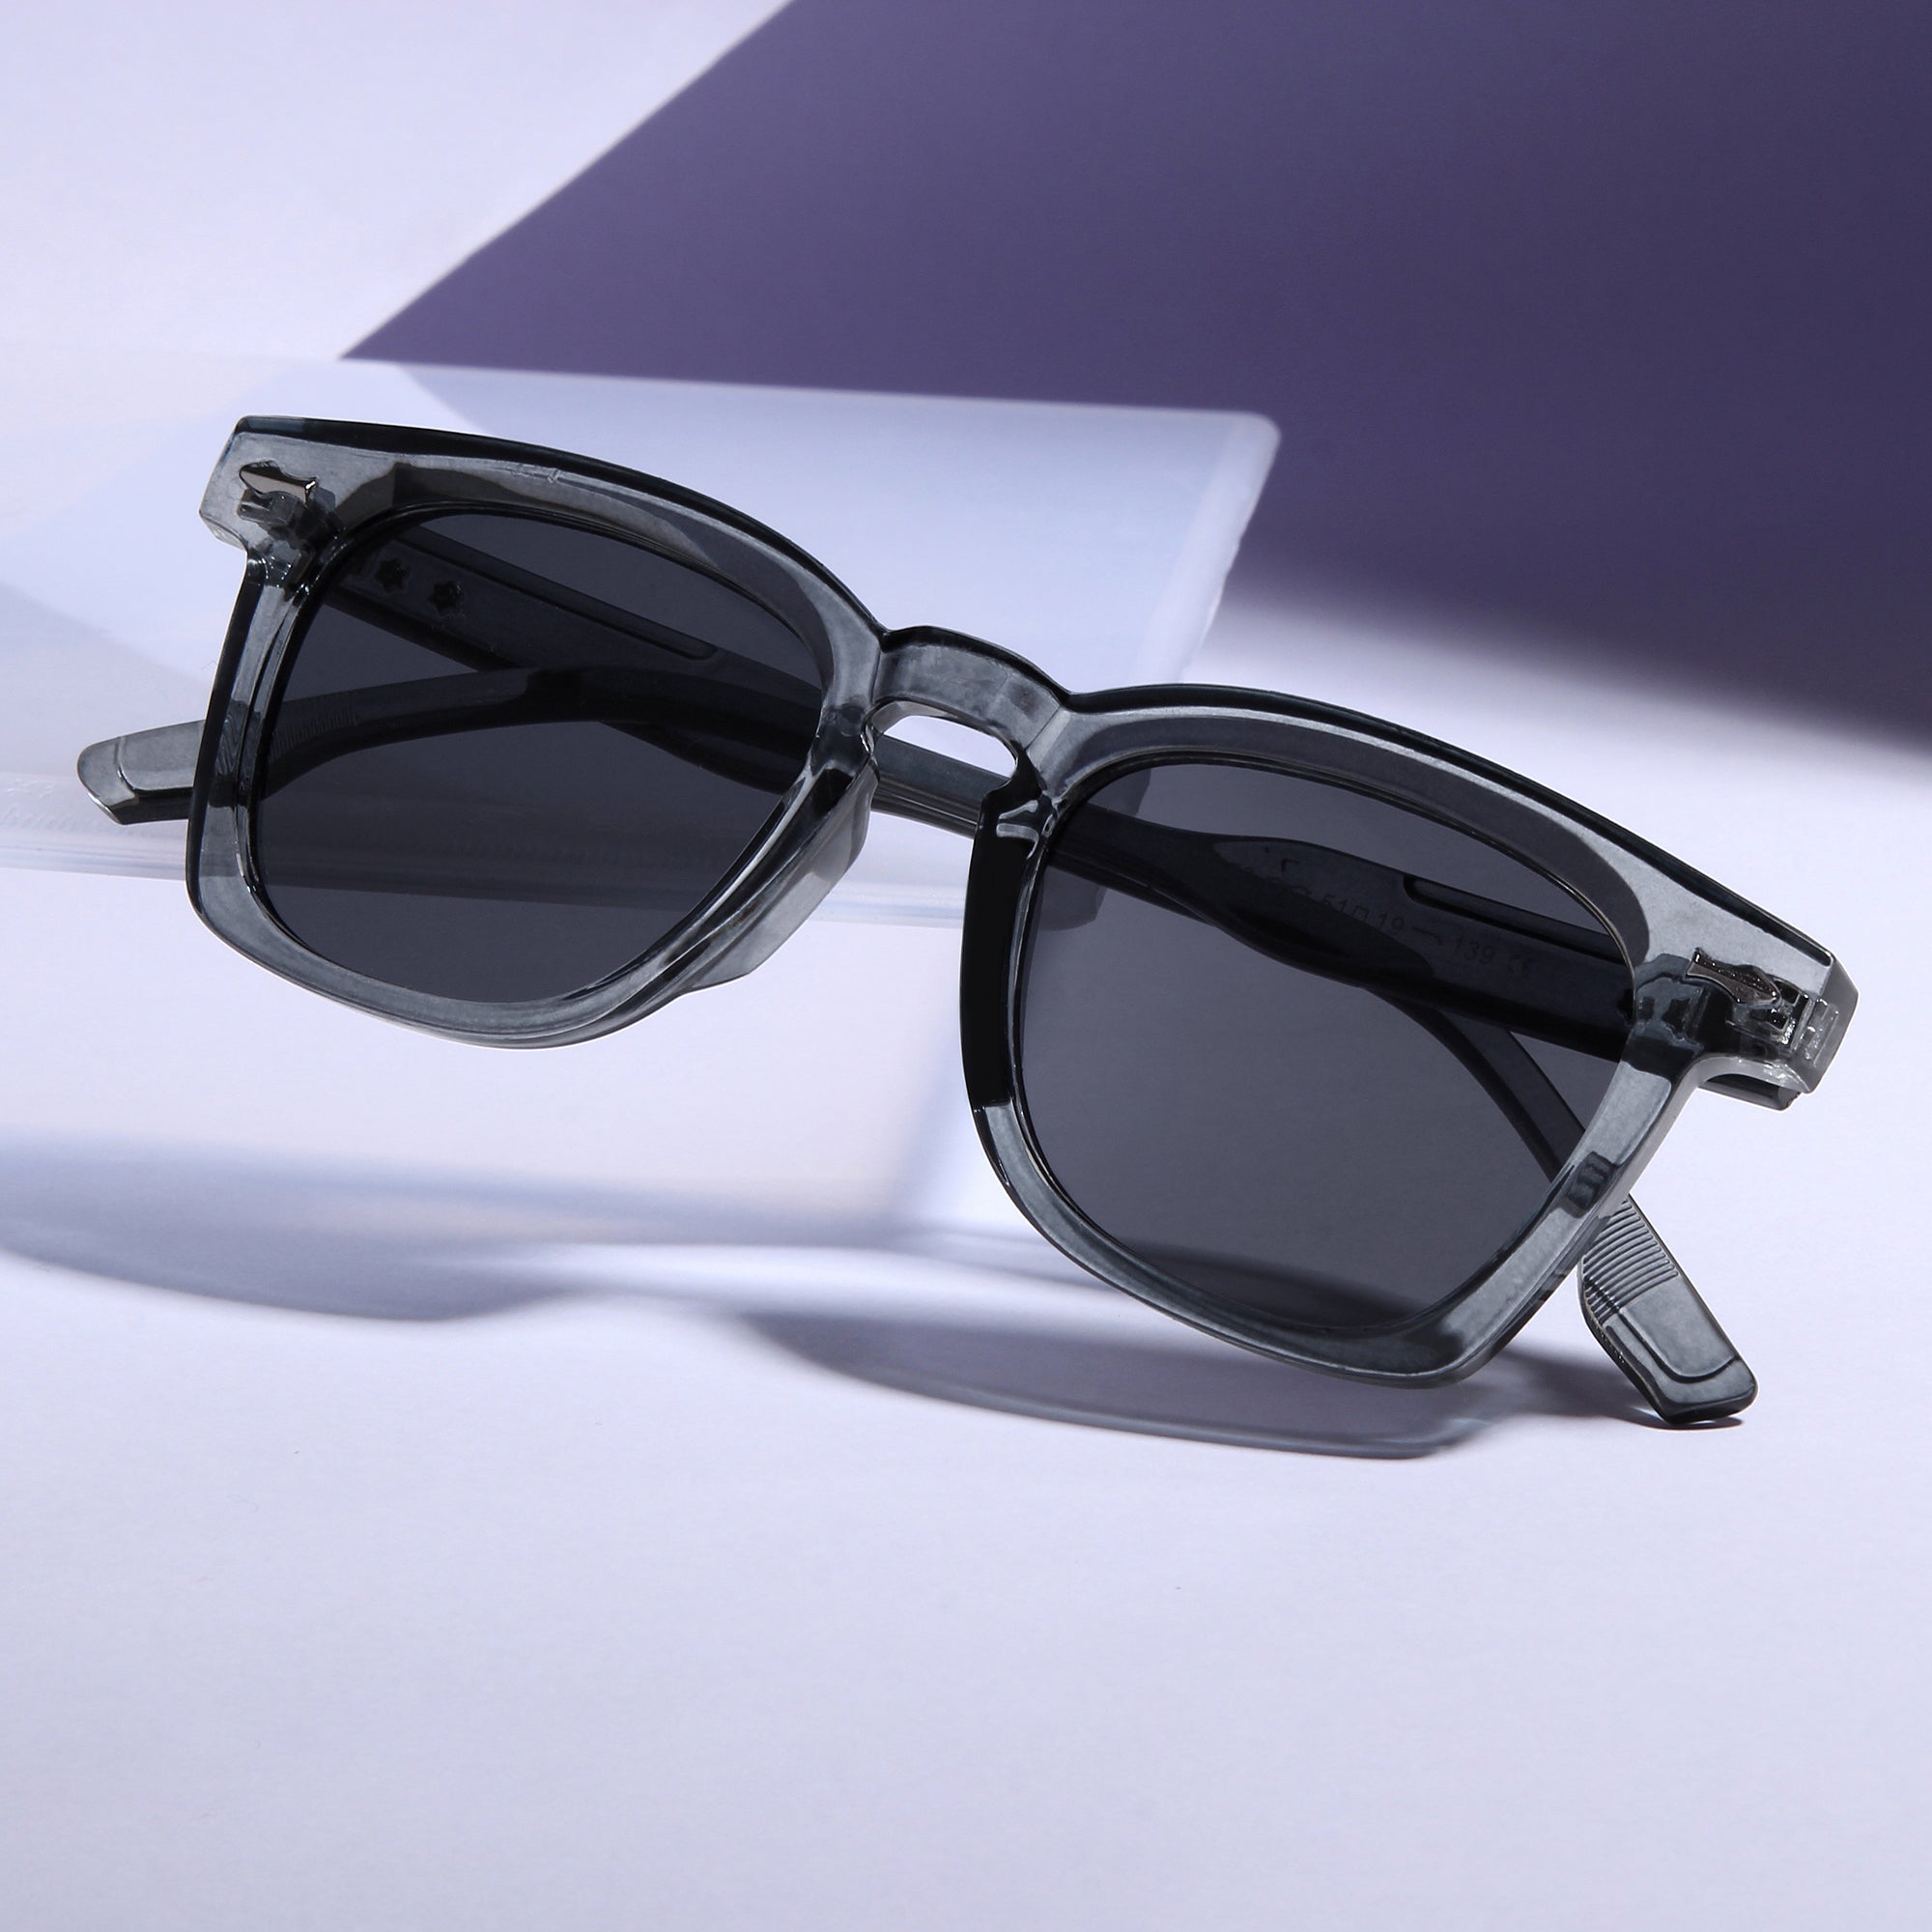 Michel Grey Black Square Sunglasses